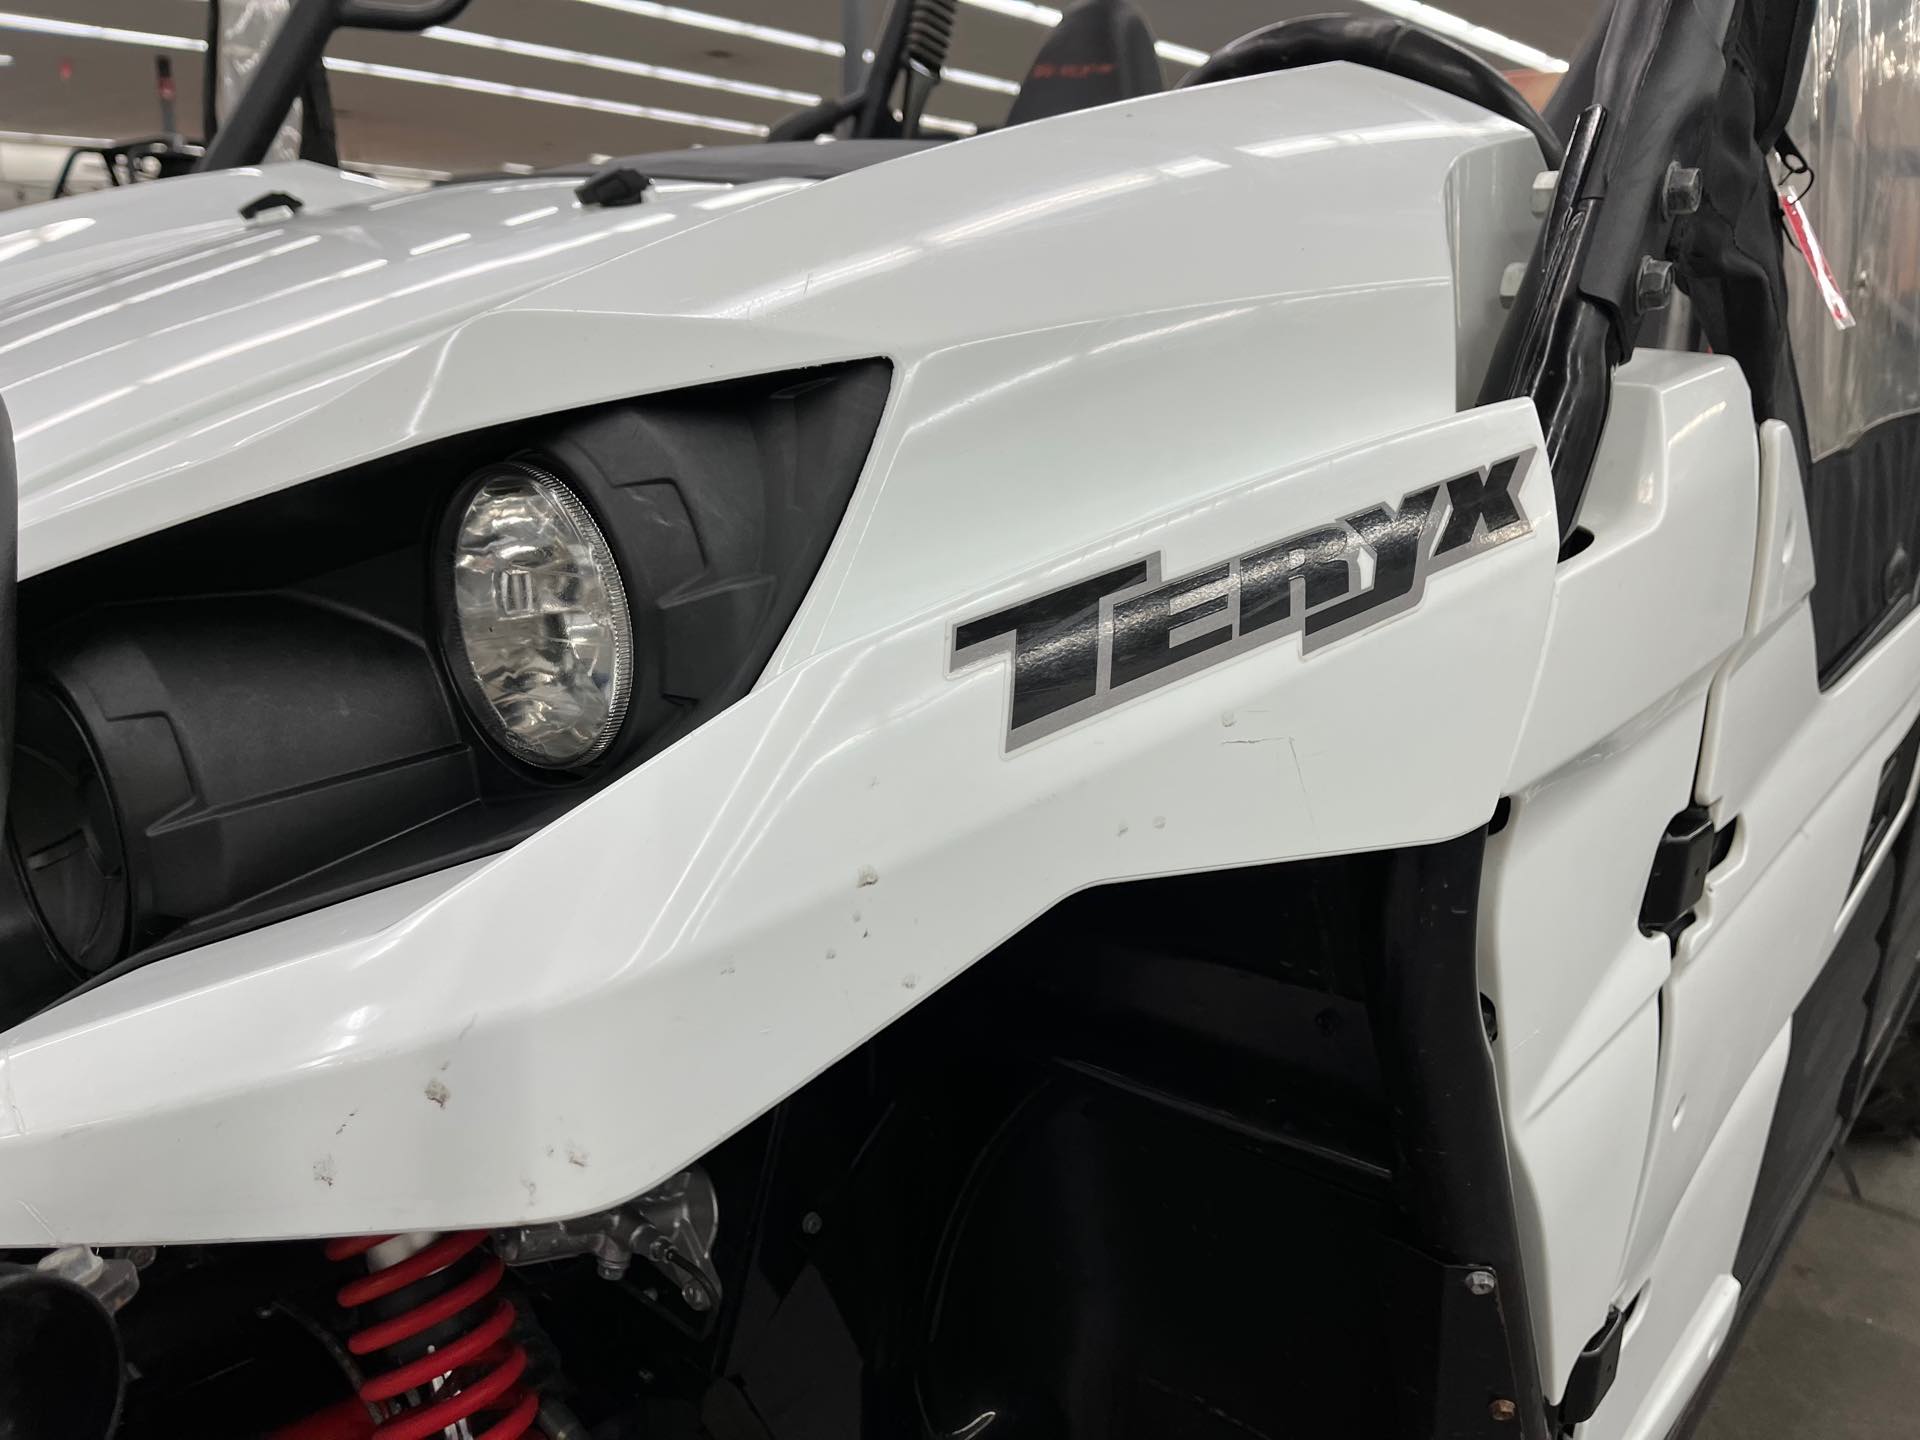 2018 Kawasaki Teryx Base at Aces Motorcycles - Denver